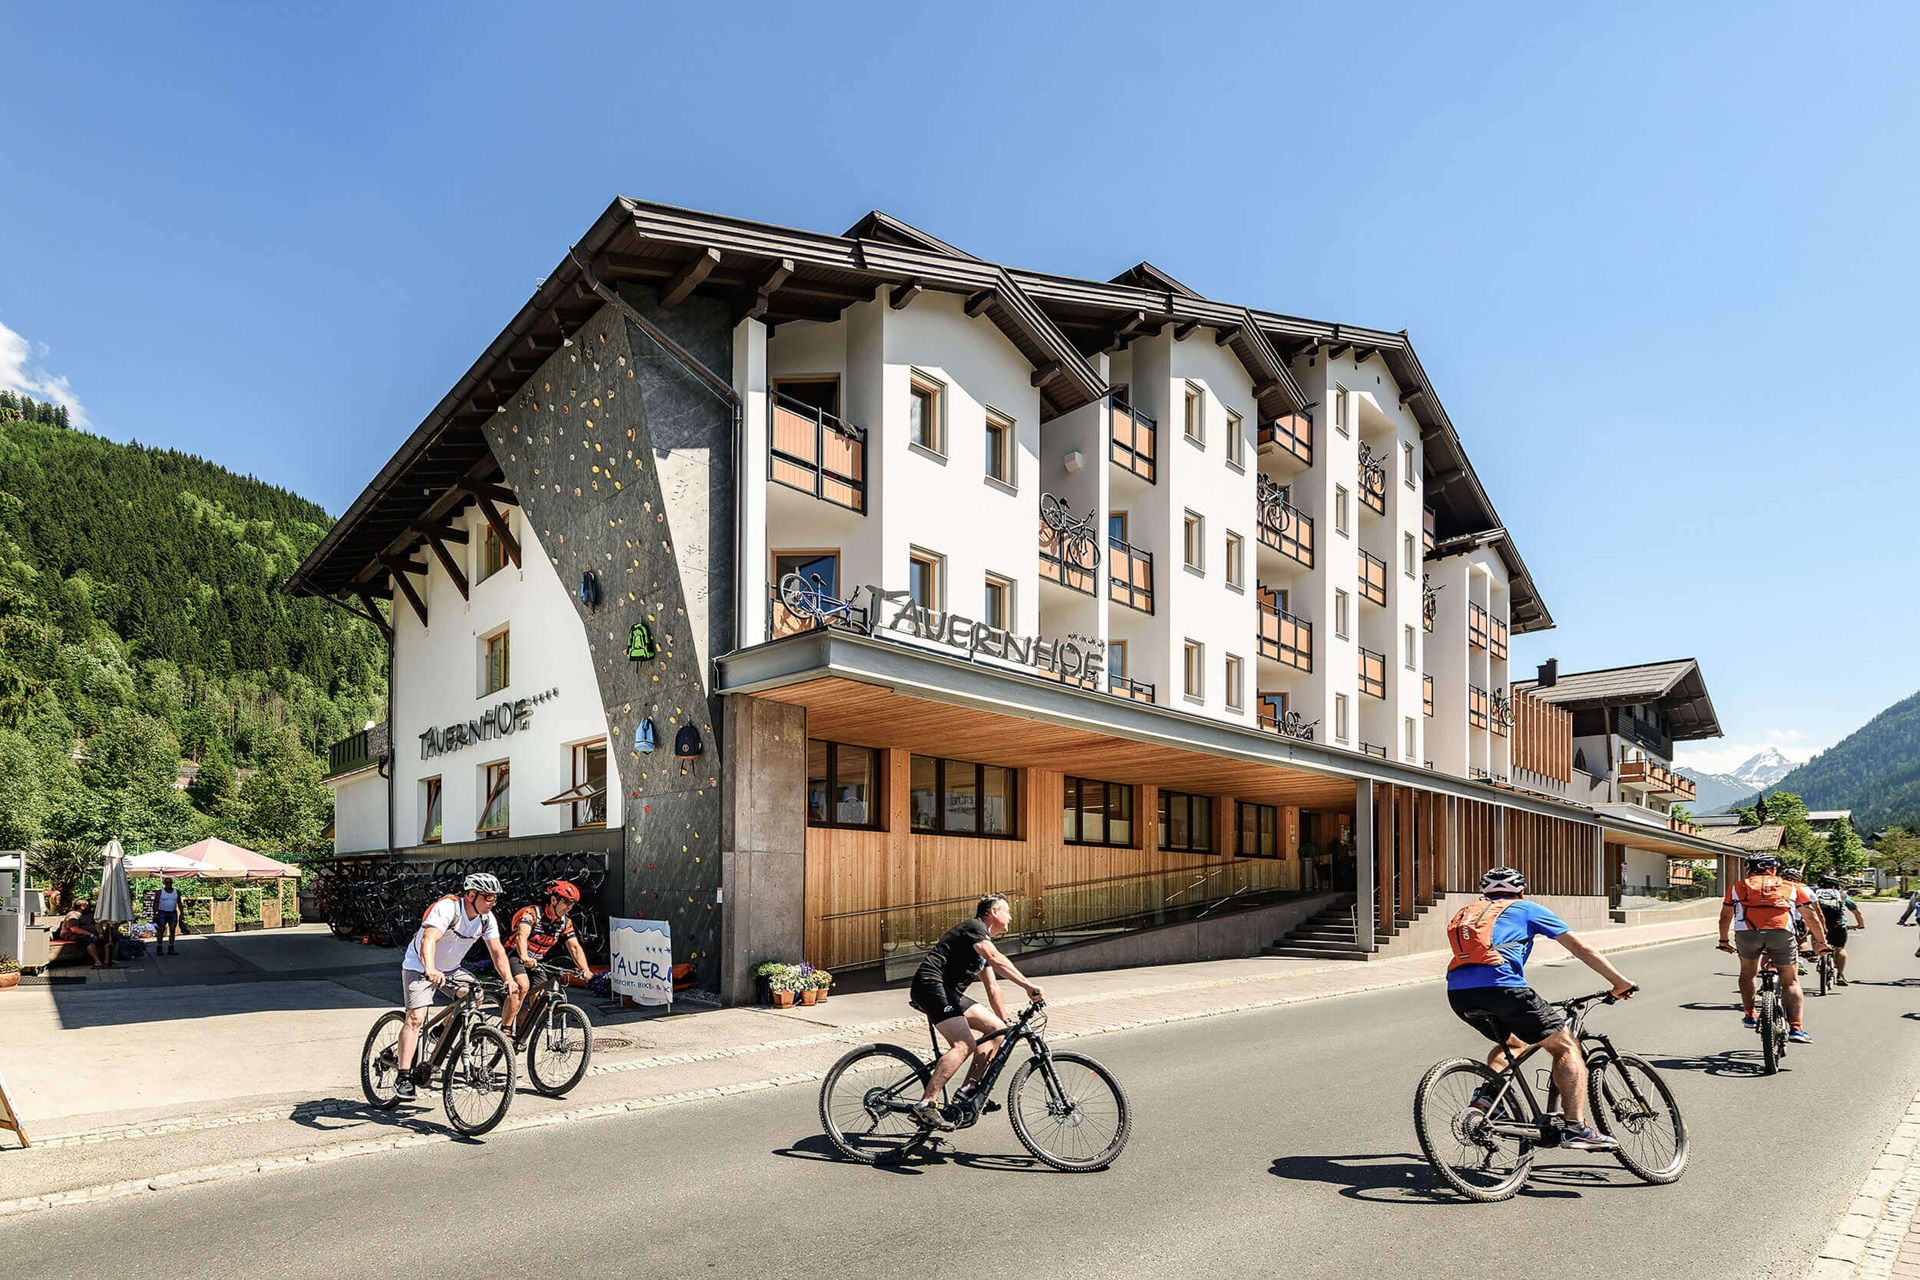 Aussenansicht des Hotels Tauernhof in Flachau mit Radfahrern im Vordergrund